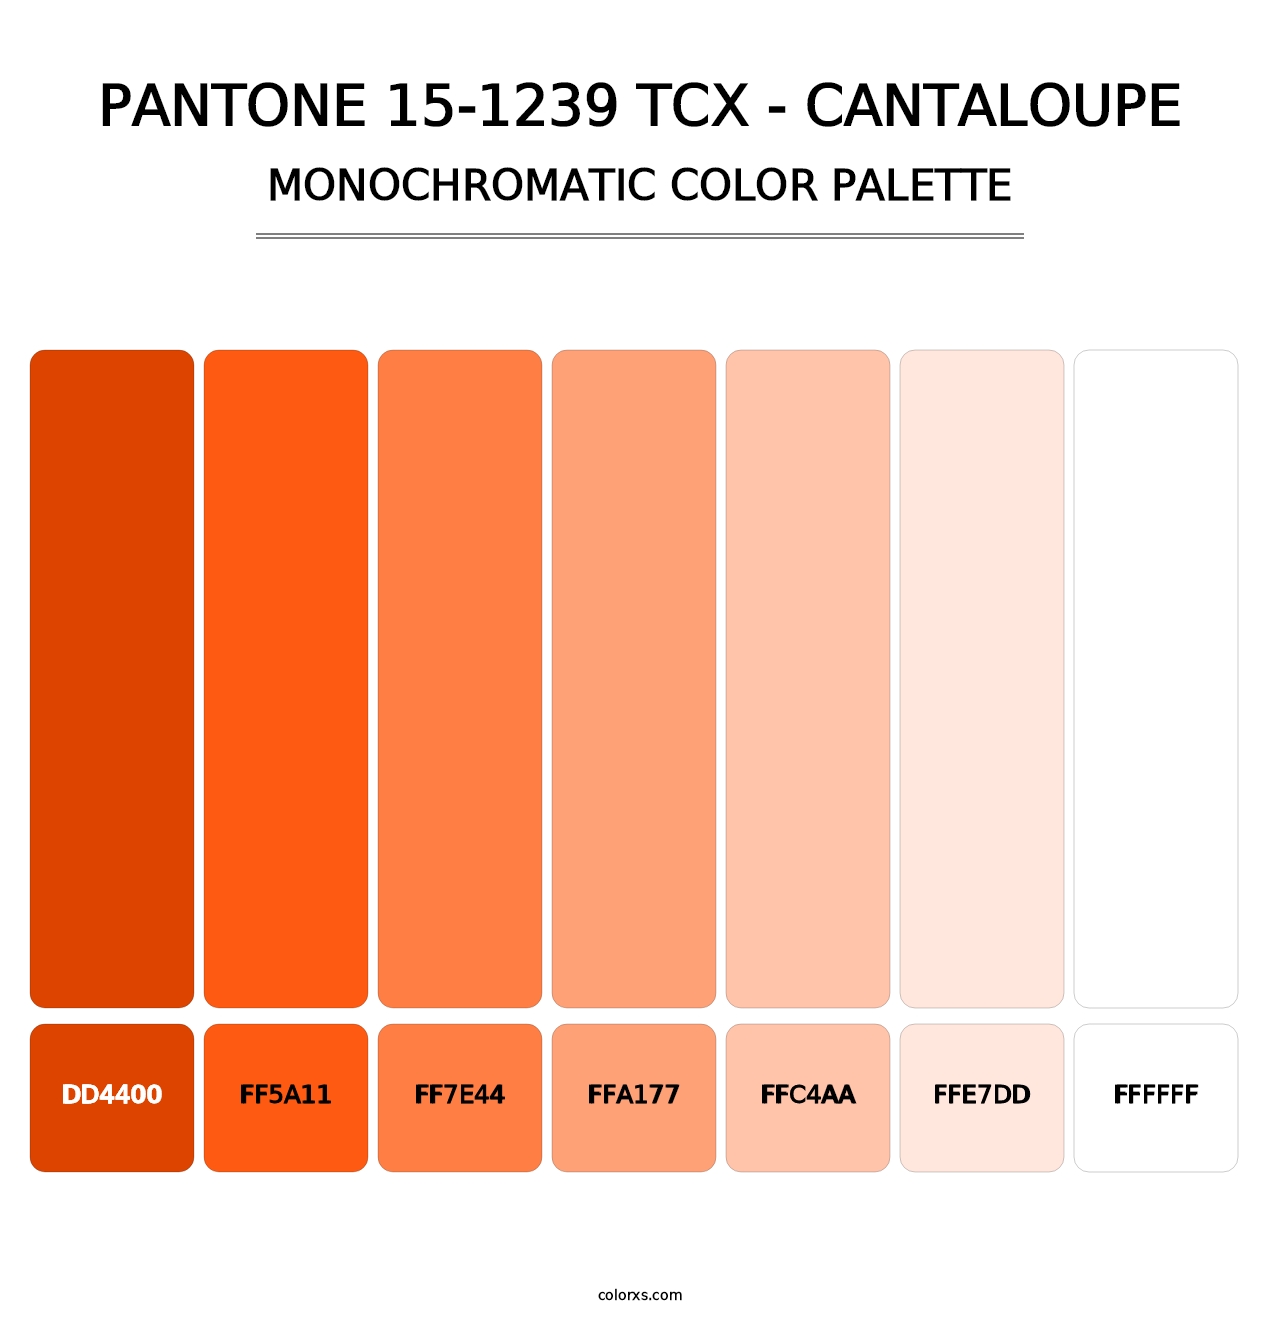 PANTONE 15-1239 TCX - Cantaloupe - Monochromatic Color Palette